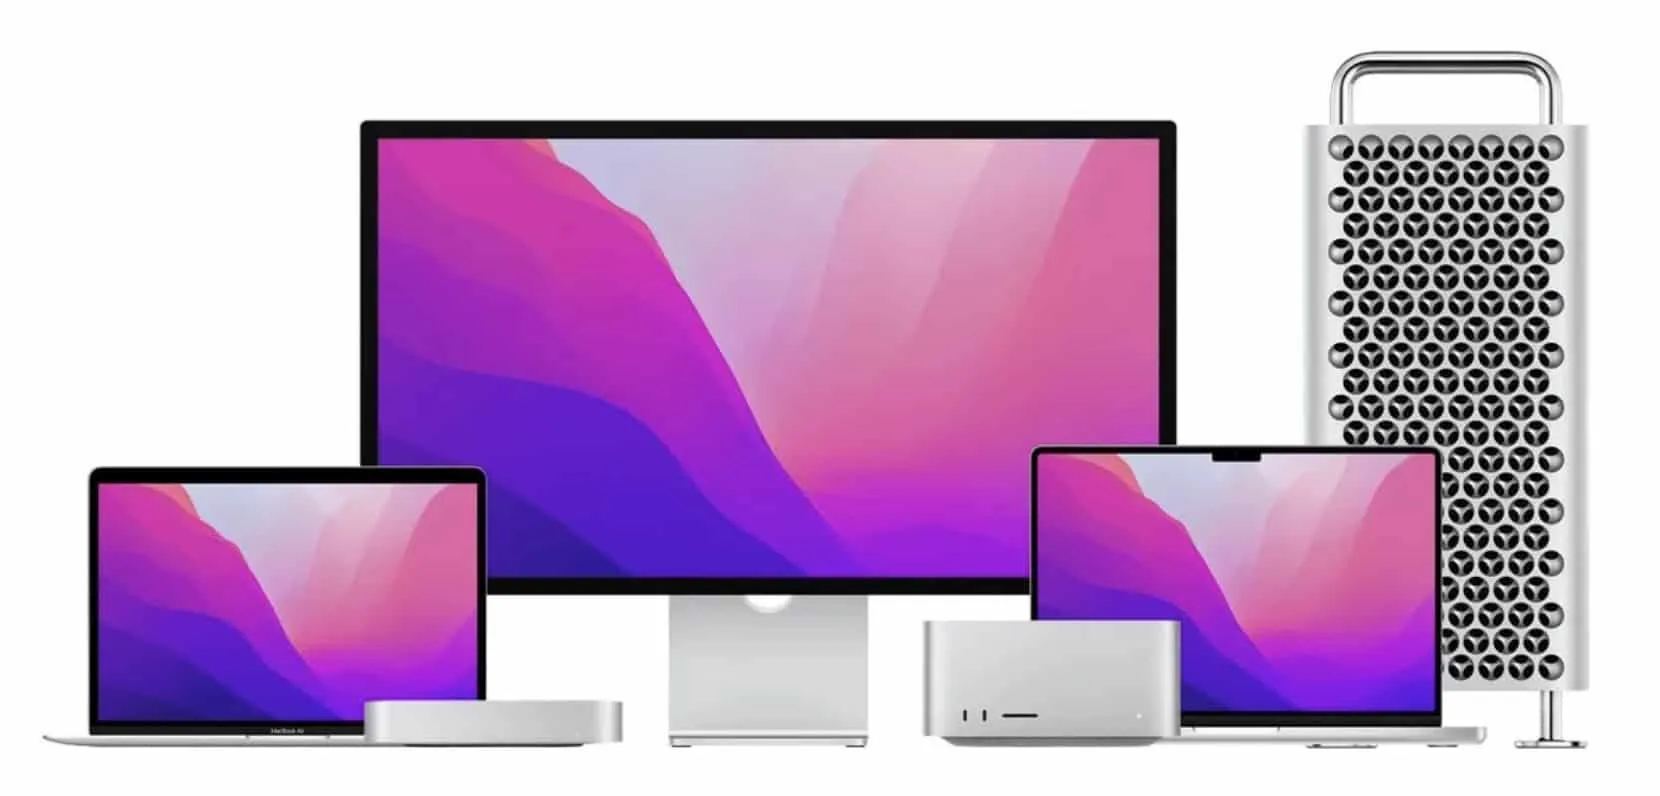 Studio Display добавляет поддержку Siri для старых компьютеров Mac